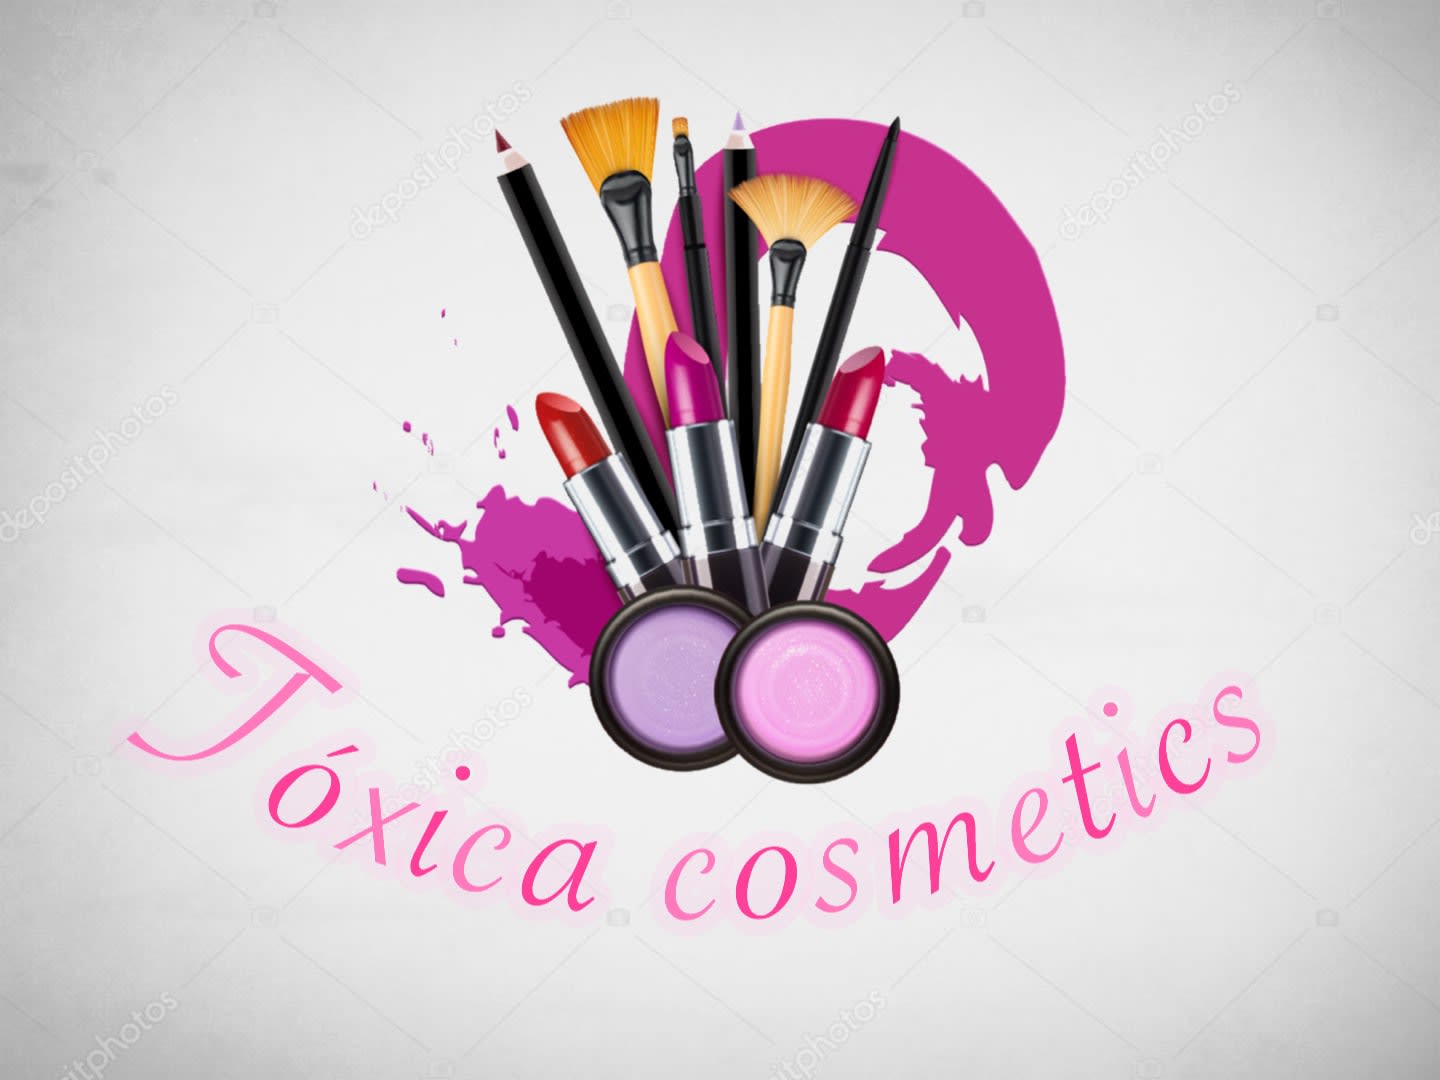 Toxica Cosmetics